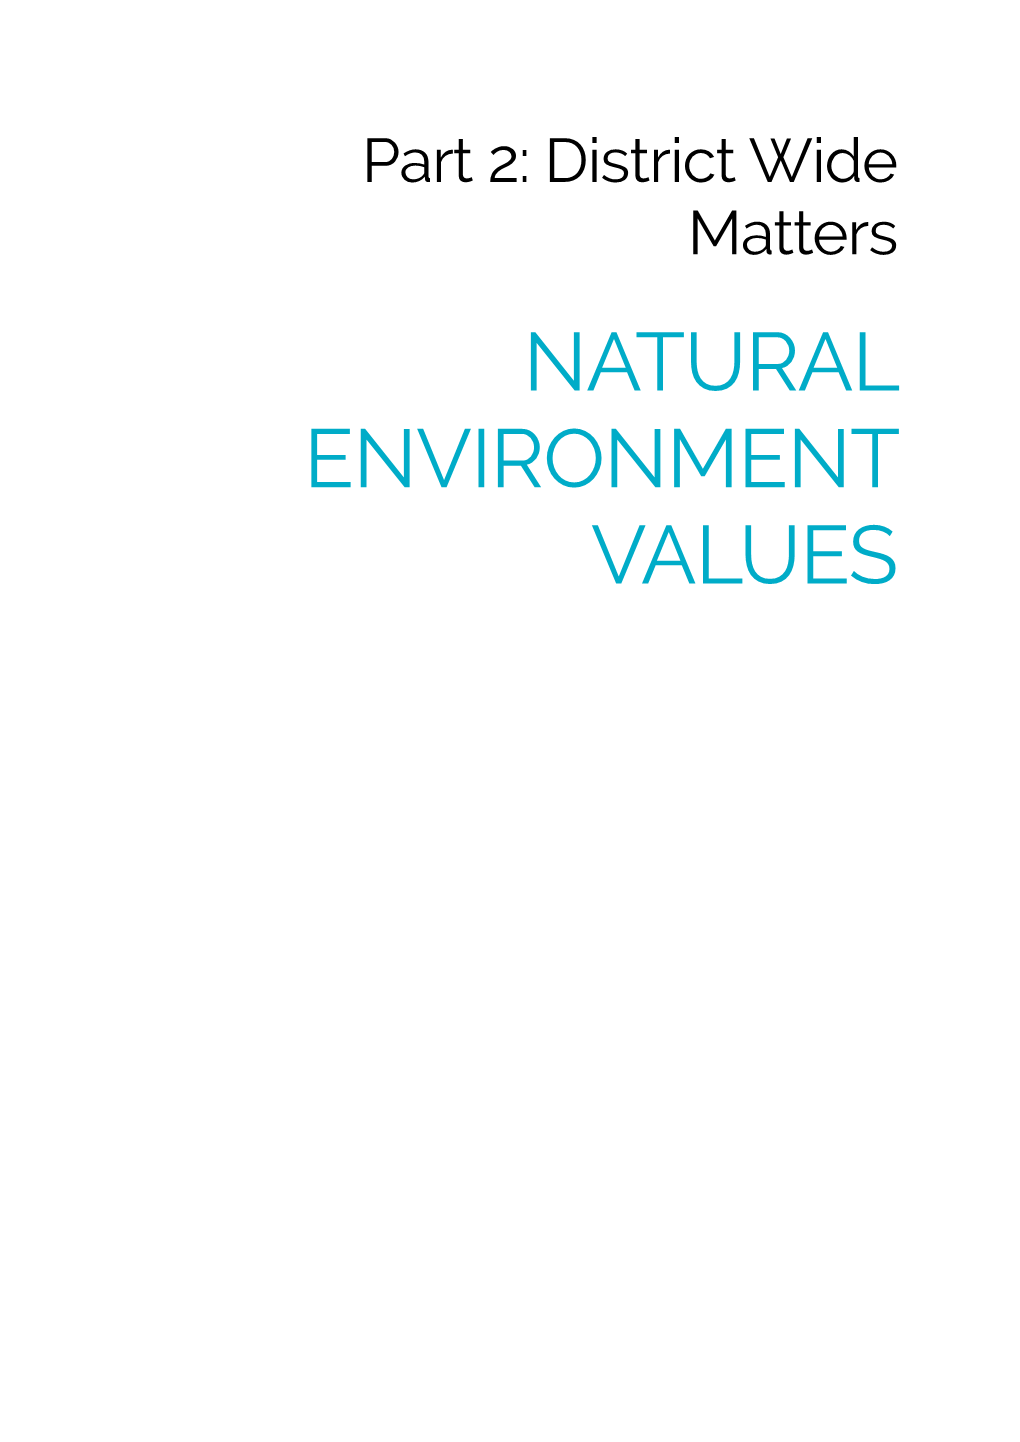 Natural Environment Values